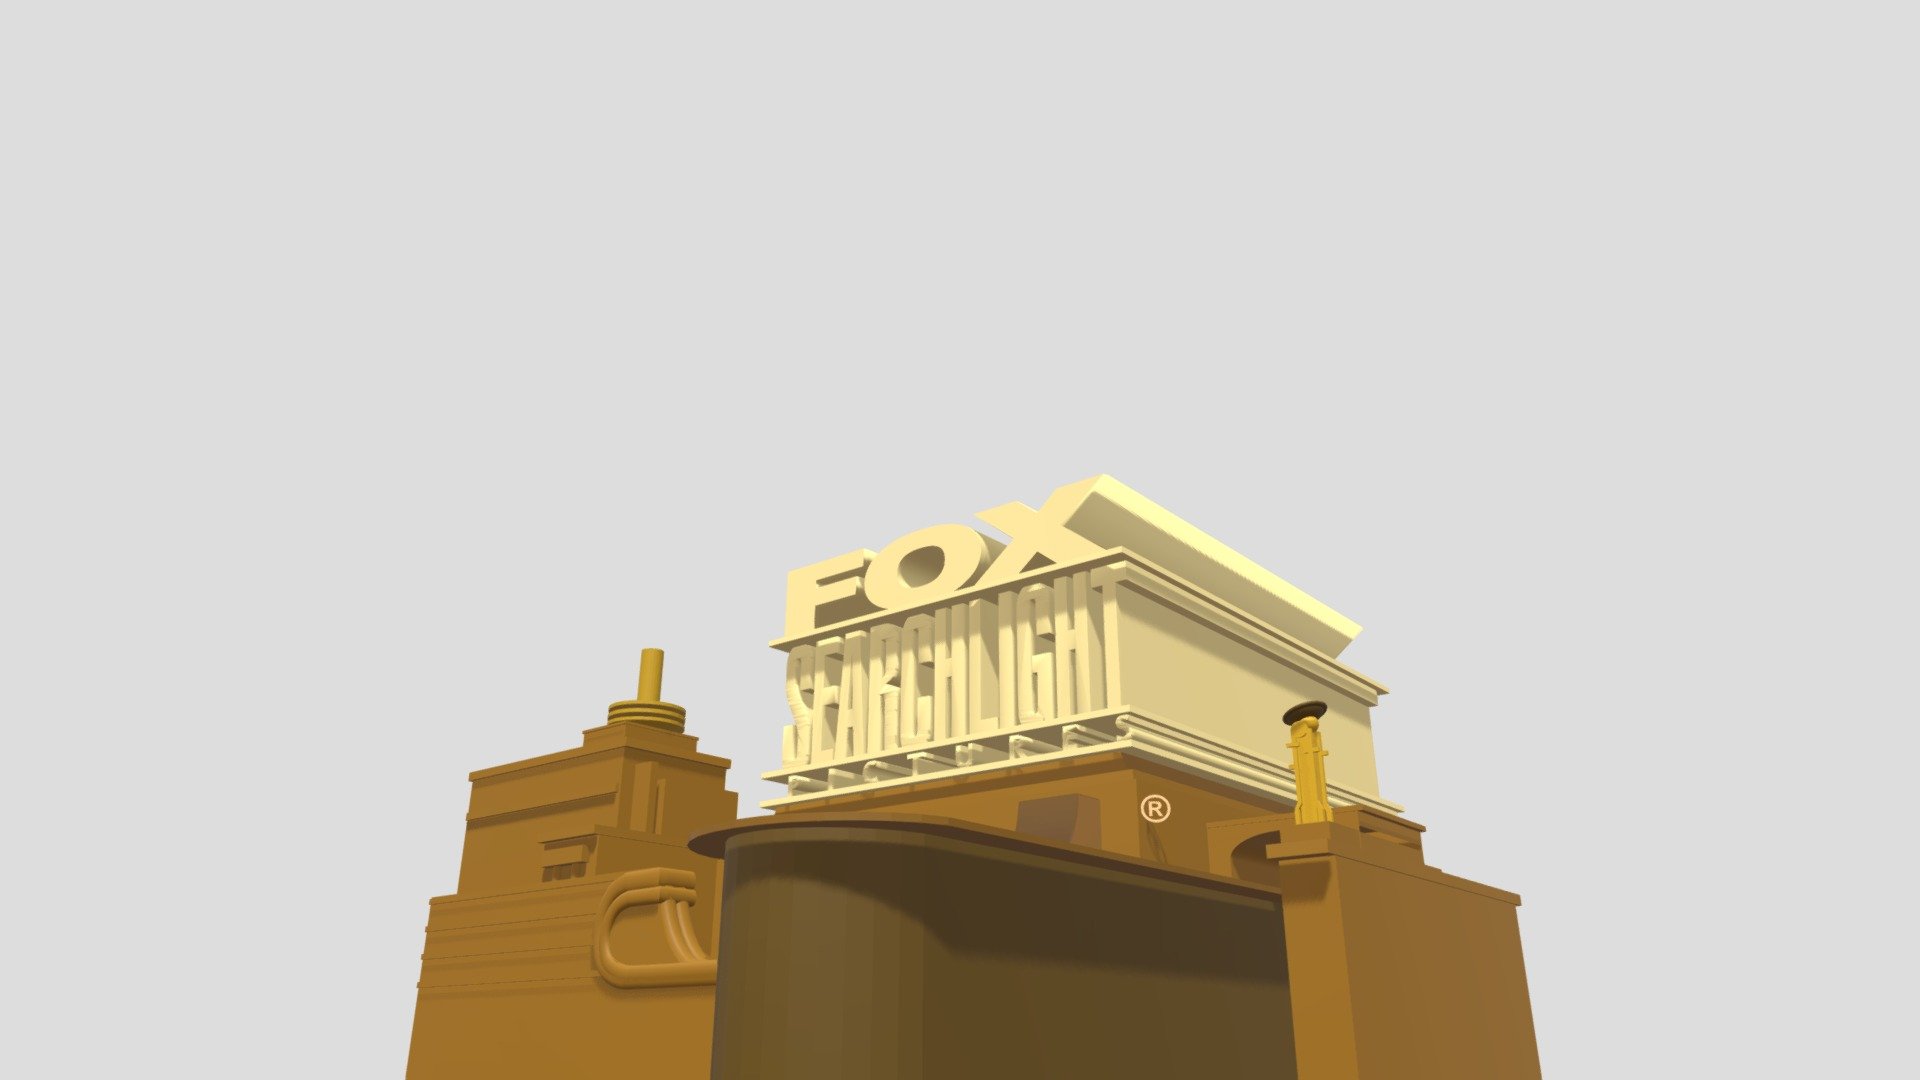 FOX Logo 1981 - 1994 Blender HD - Download Free 3D model by Ethan James  Tilton (@muddatkathleen) [906acad]